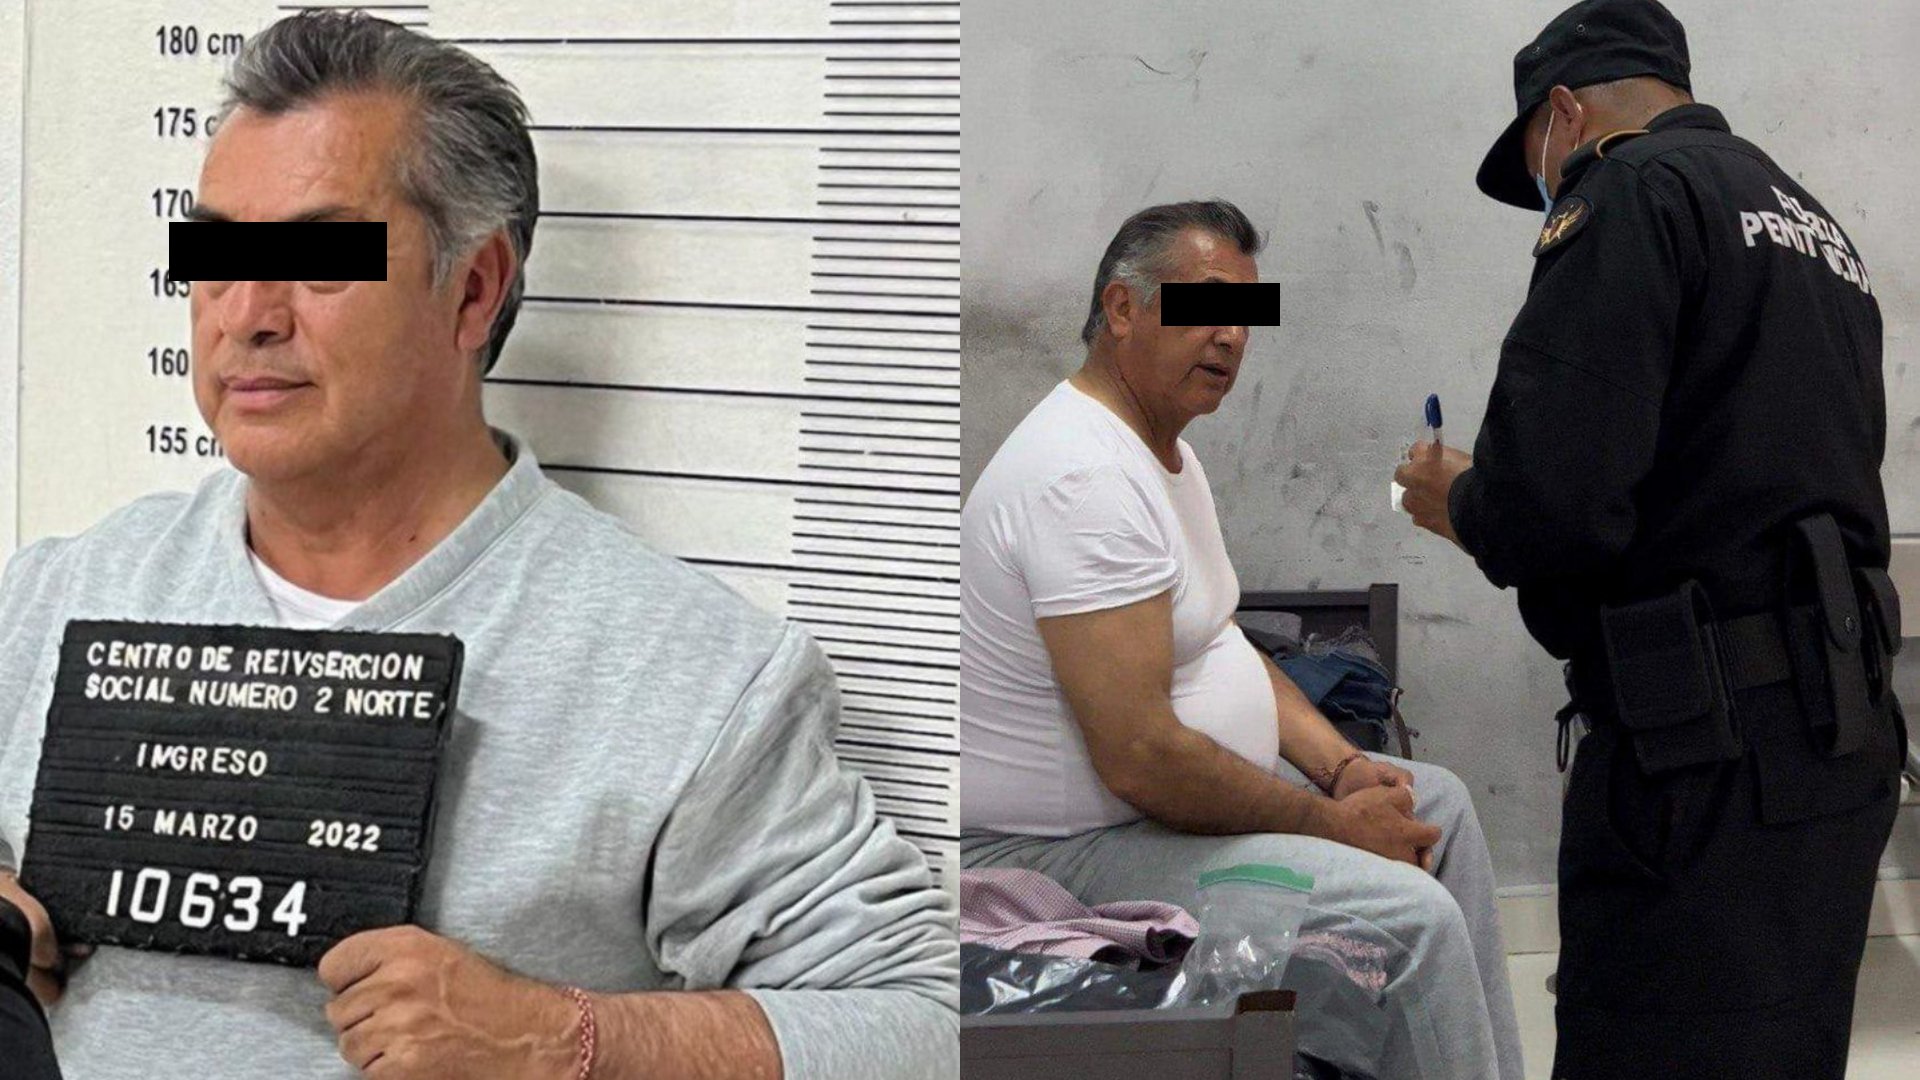  Jaime Rodríguez "El Bronco" fue recluido en el Penal de Apodaca, el ex gobernador de Nuevo León esta acusado por desvío de recursos públicos. (FOTO: CUARTOSCURO.COM)